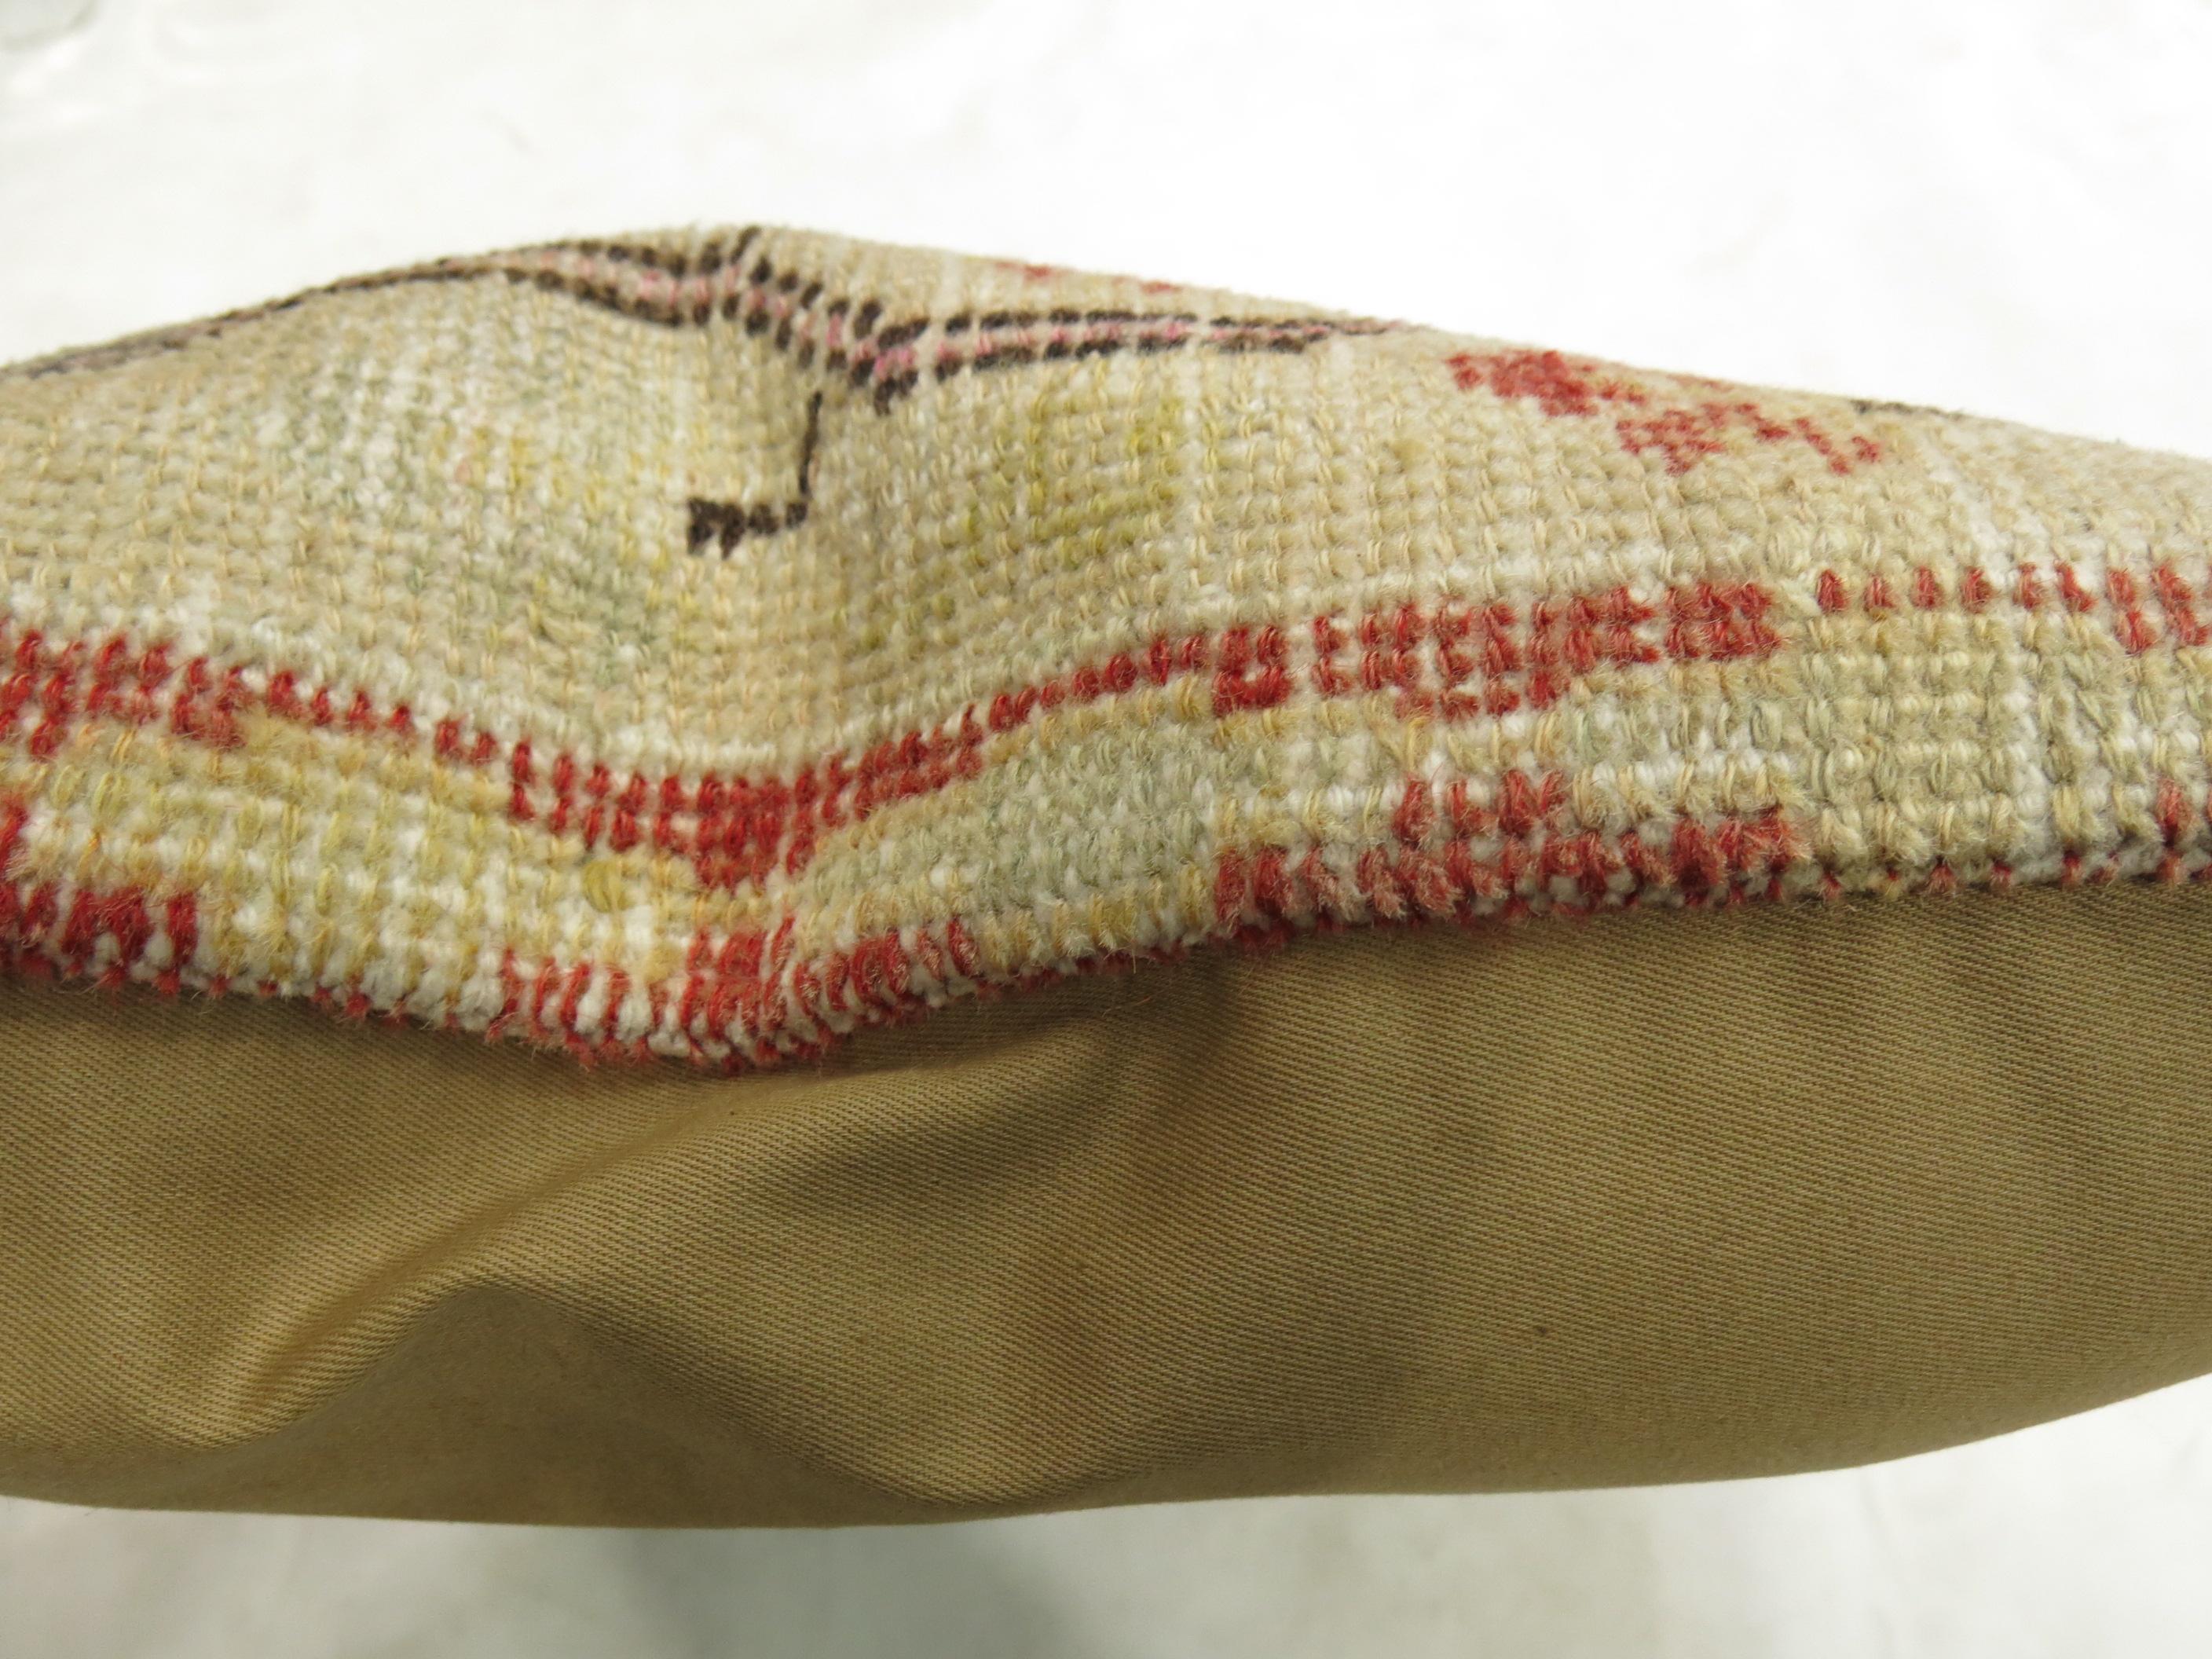 Oreiller fabriqué à partir d'un tapis turc Oushak. Rouge, beige et vert clair

Mesures : 1'5